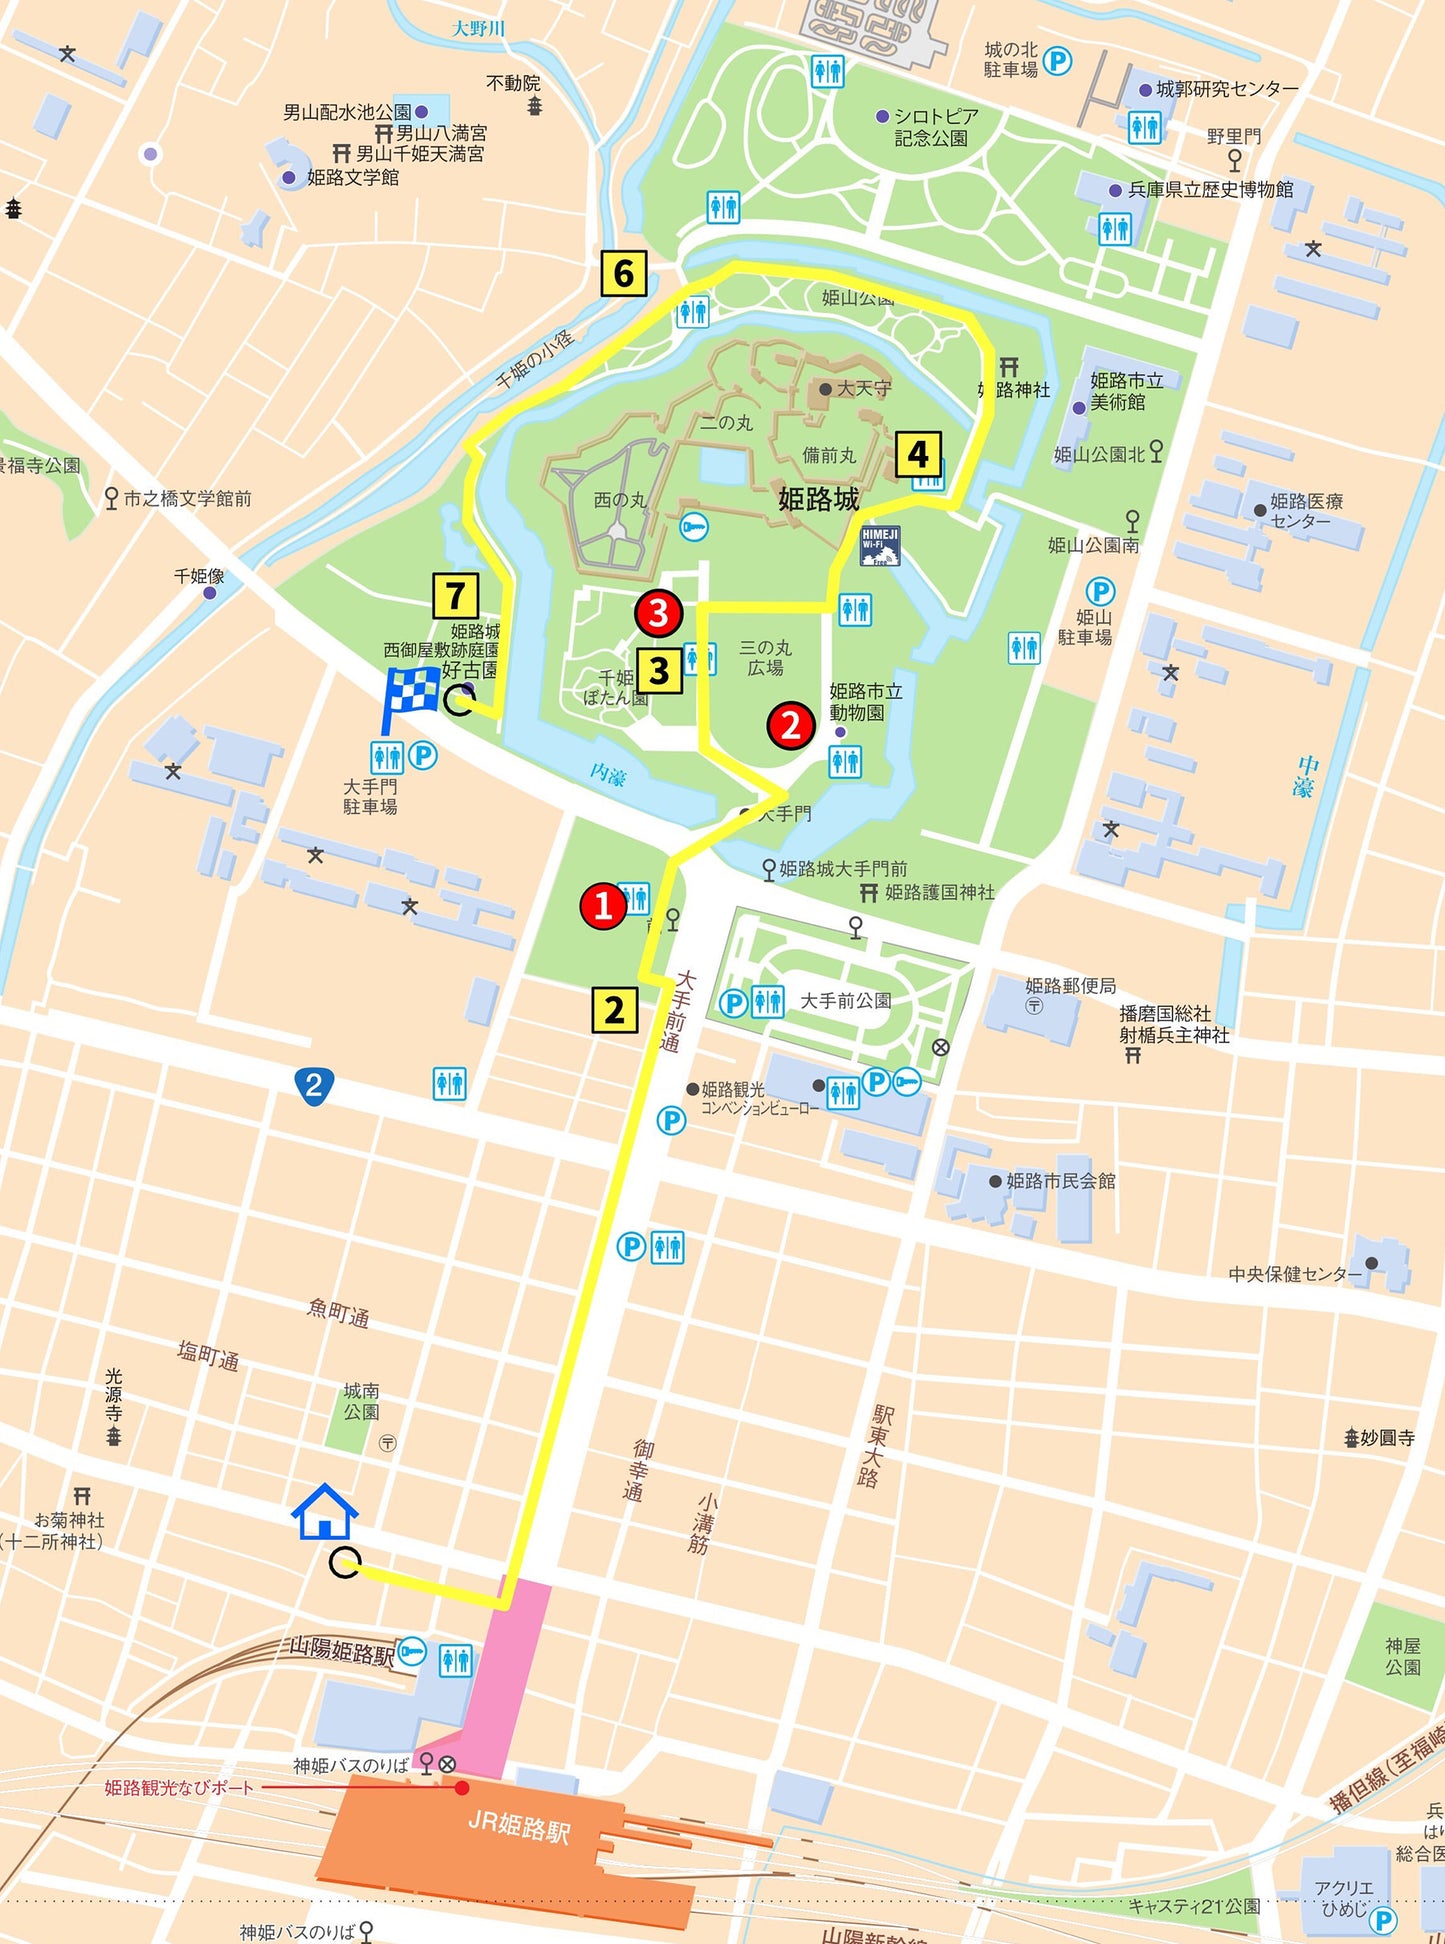 【自動運転ロボットで巡る姫路城周遊観光】Dコース：紅葉の絶景日本一! 「好古園前コース」